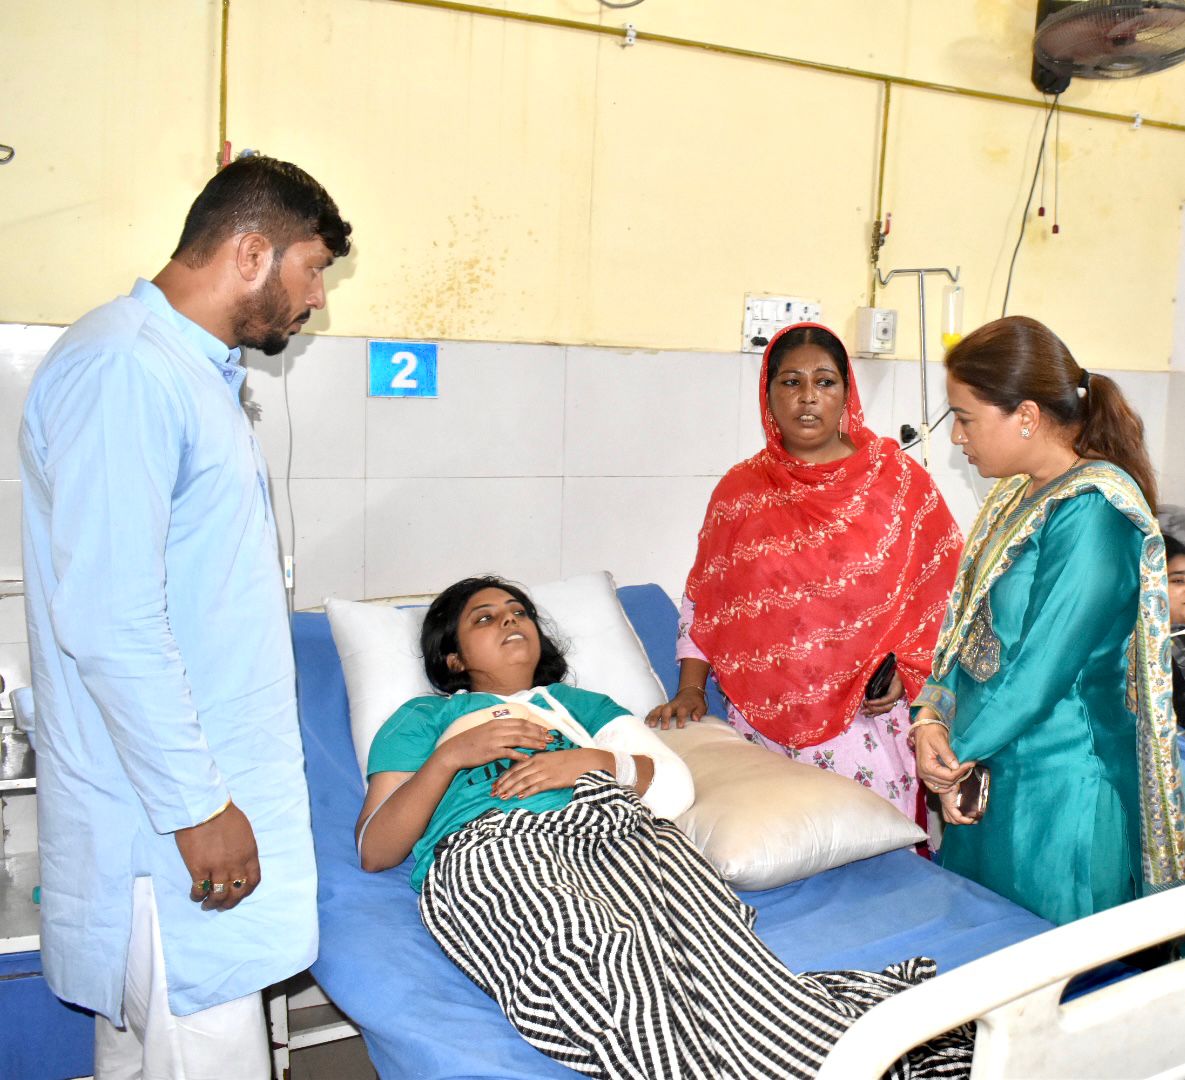 कैबिनेट मंत्री ने काशीपुर पहुंचकर सड़क हादसे में घायल श्रमिकों का जाना हाल,डॉक्टरों को दिए घायलों के समुचित इलाज करने के निर्देश।